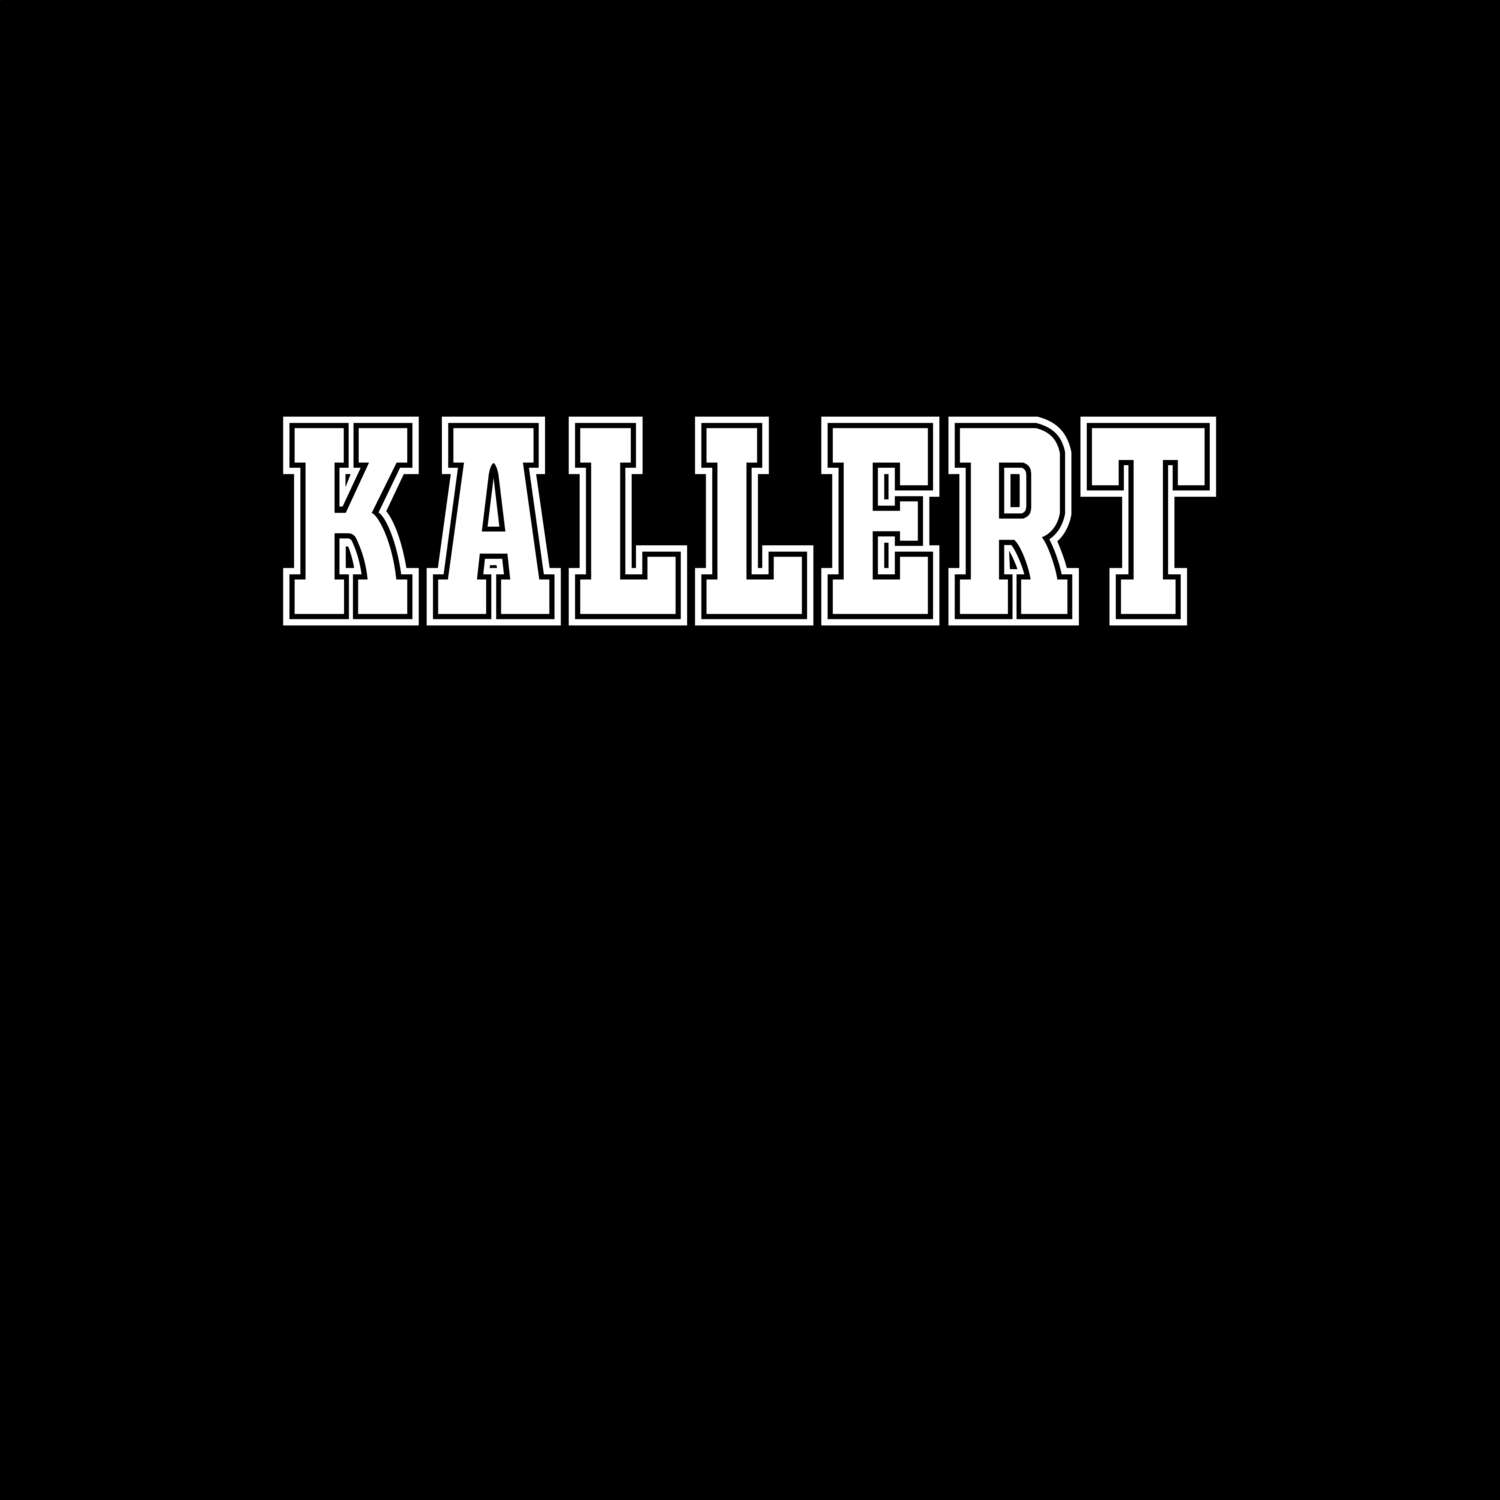 Kallert T-Shirt »Classic«